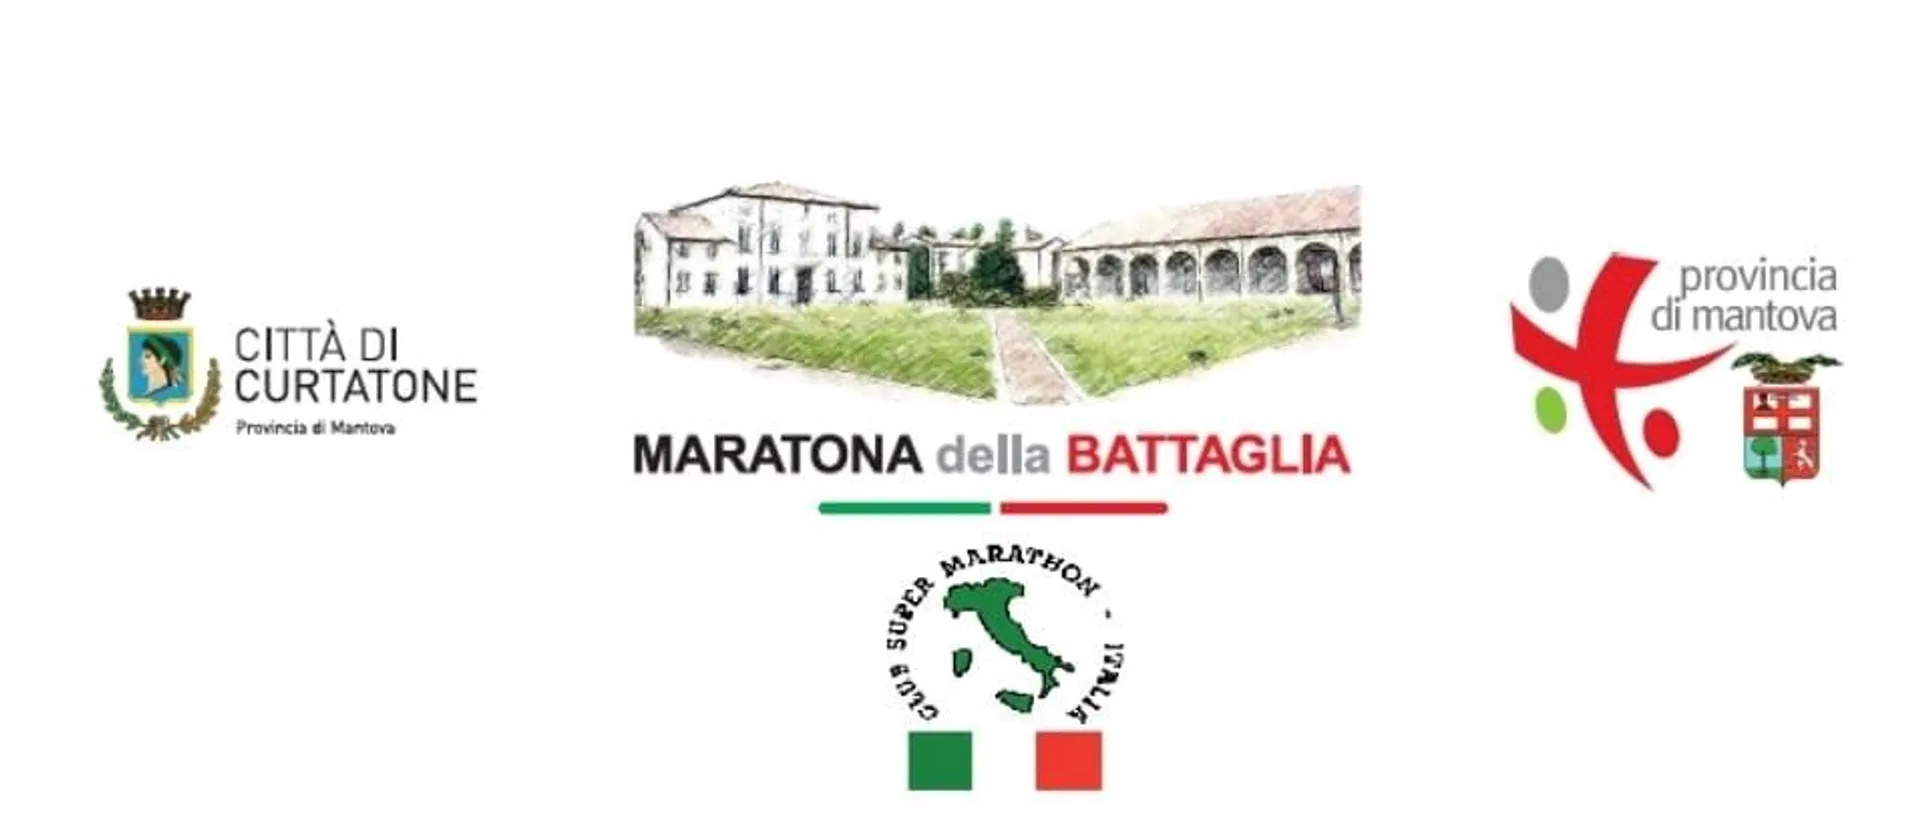 Image of Maratona della Battaglia - Curtatone